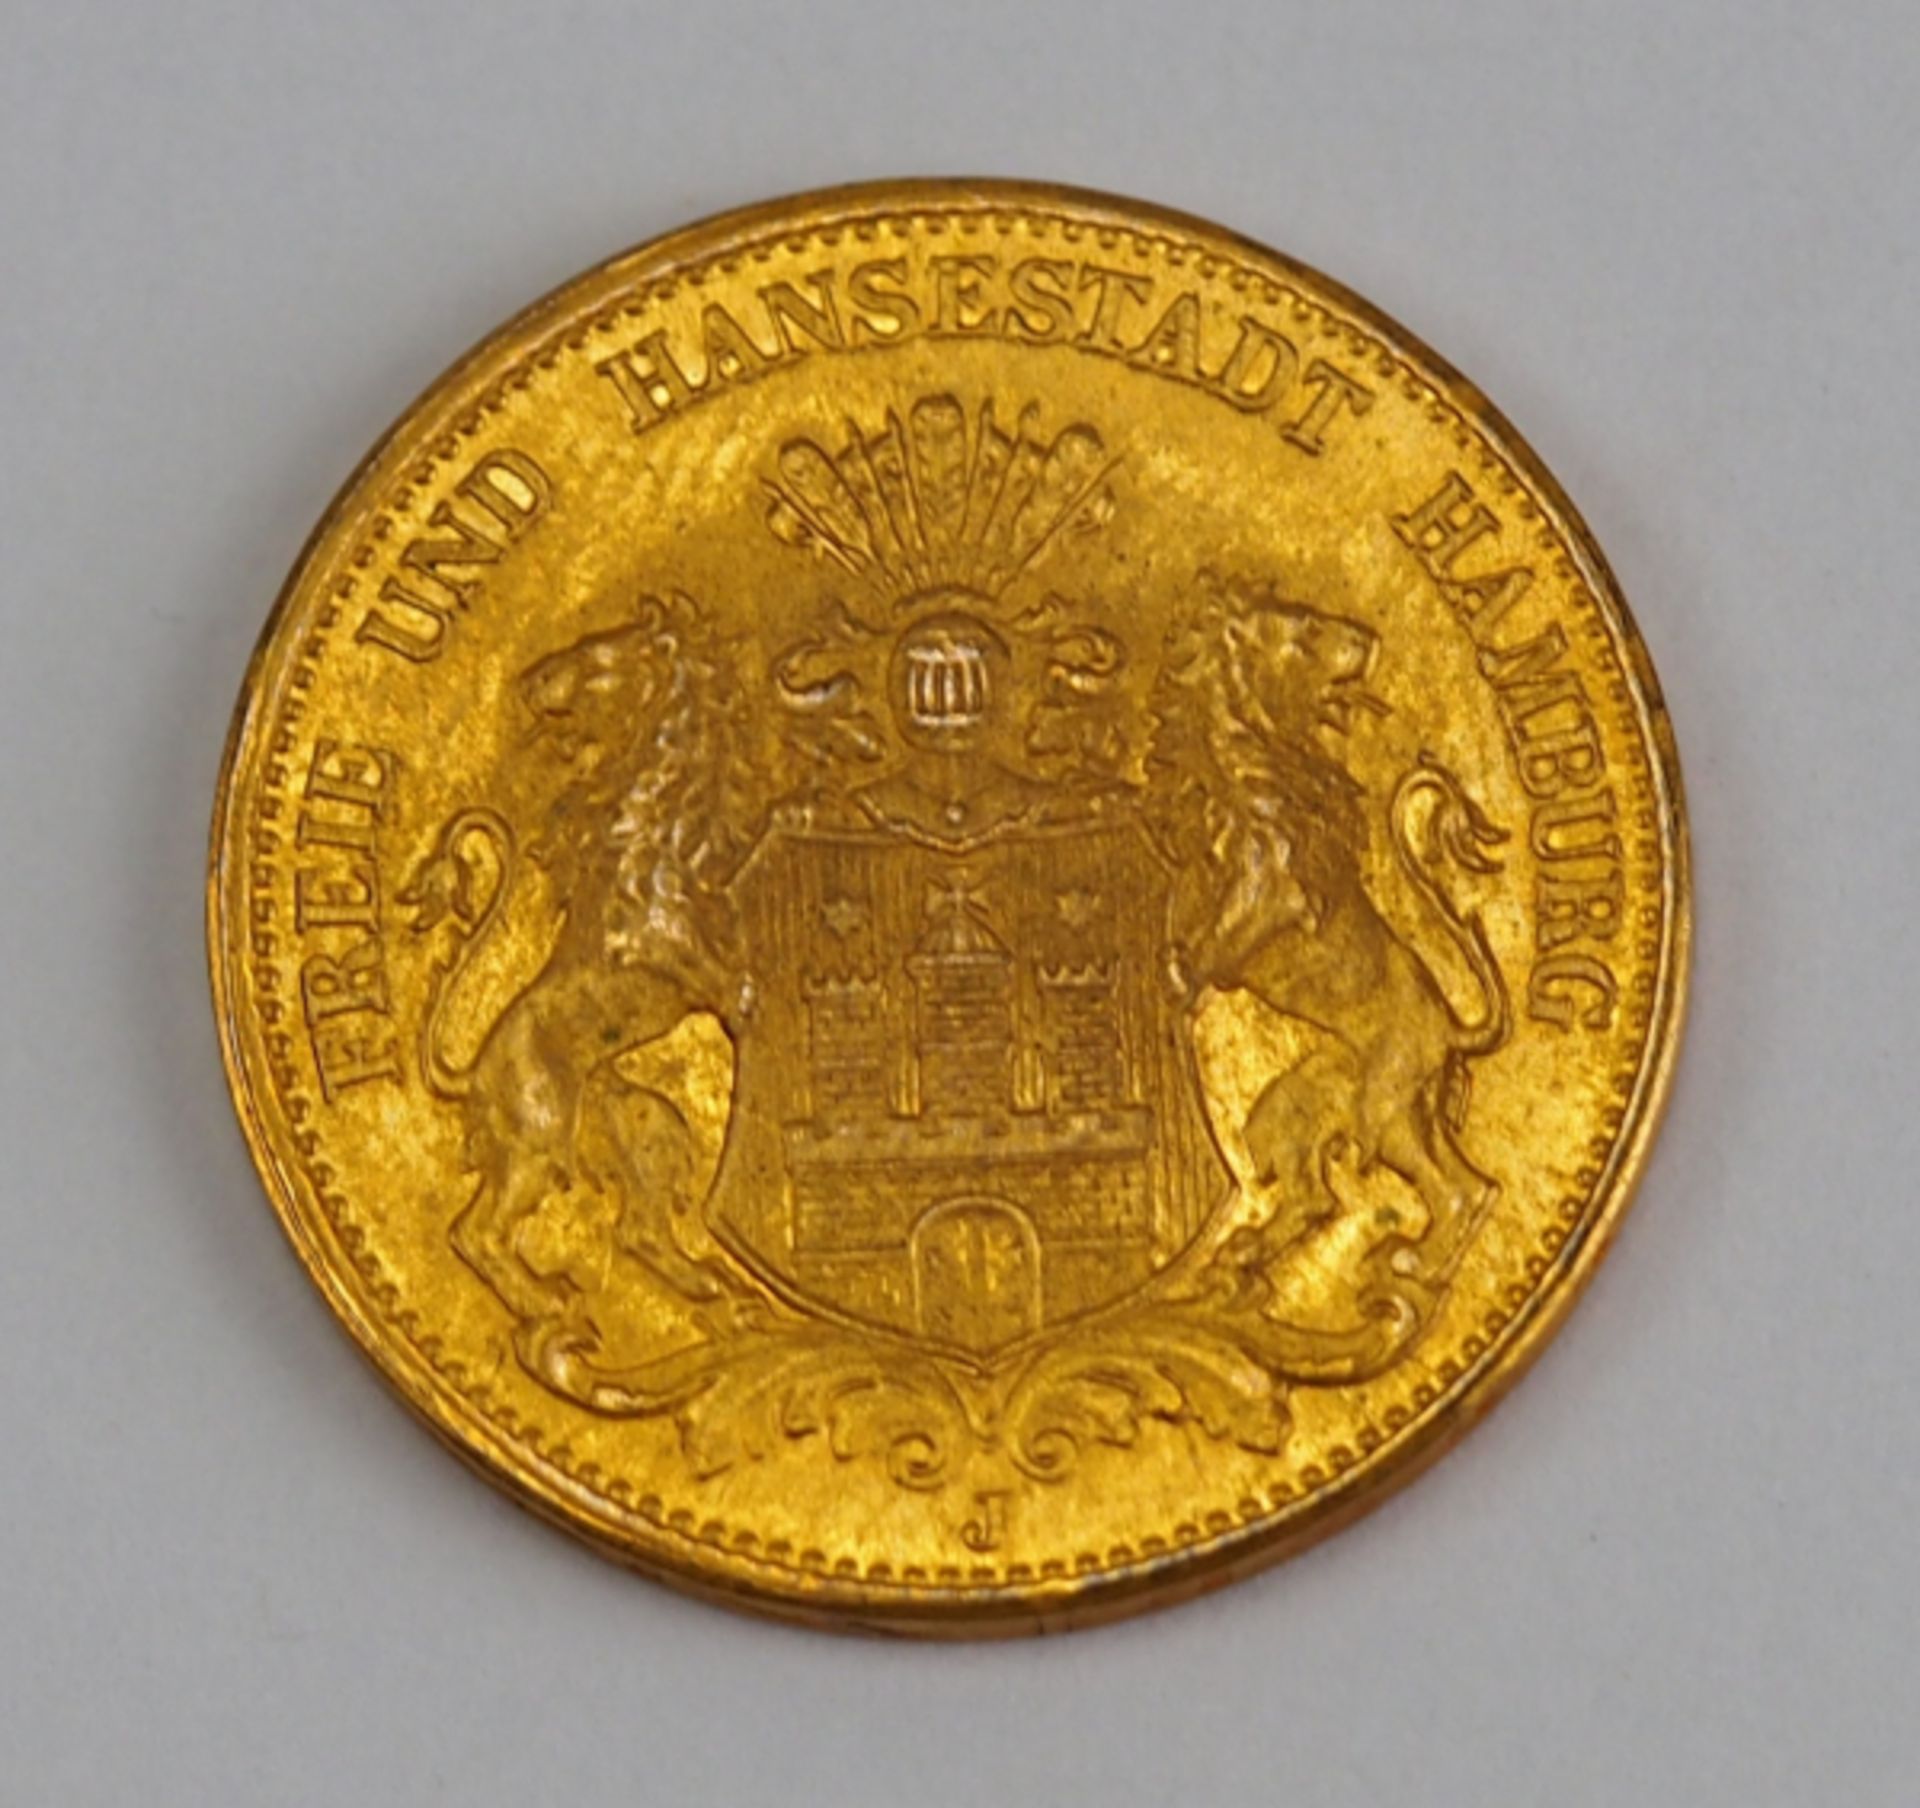 Hamburg: 20 Mark, 1906.Gold, Münzzeichen J.Zustand: I-II- - -23.00 % buyer's premium on the hammer